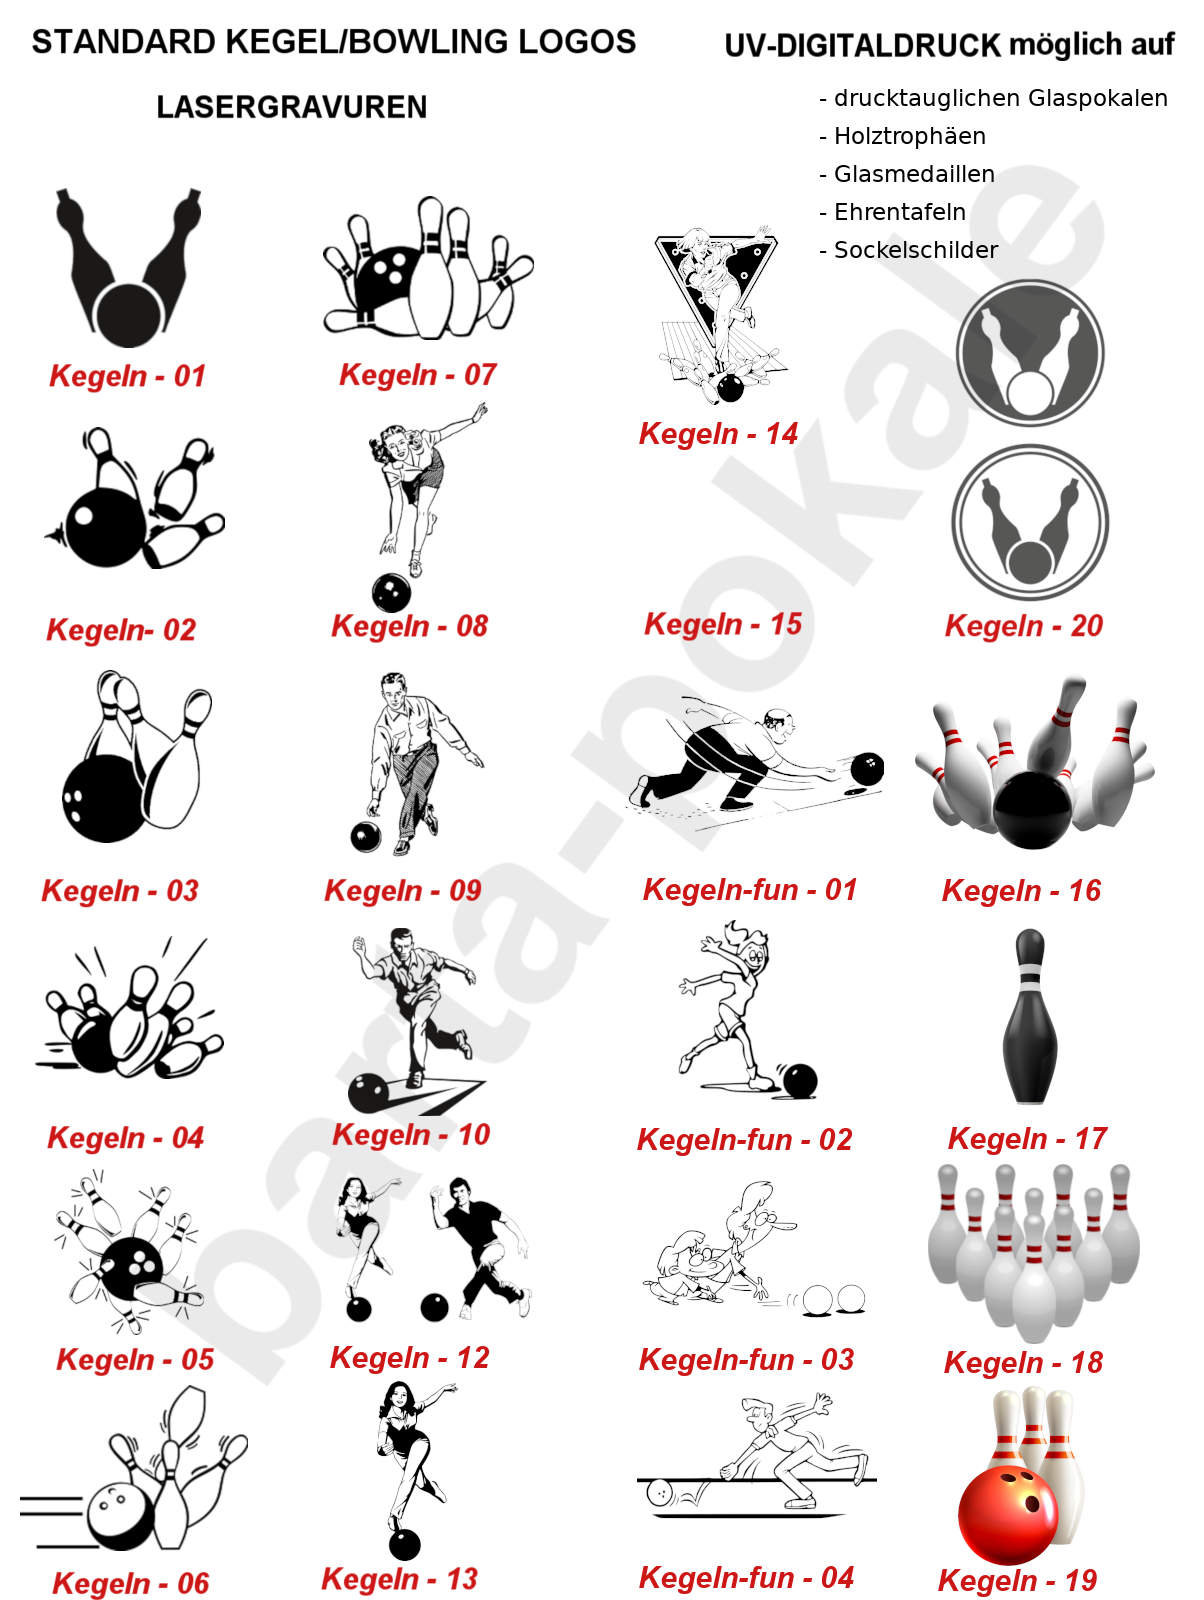 Logos Kegeln-Bowling